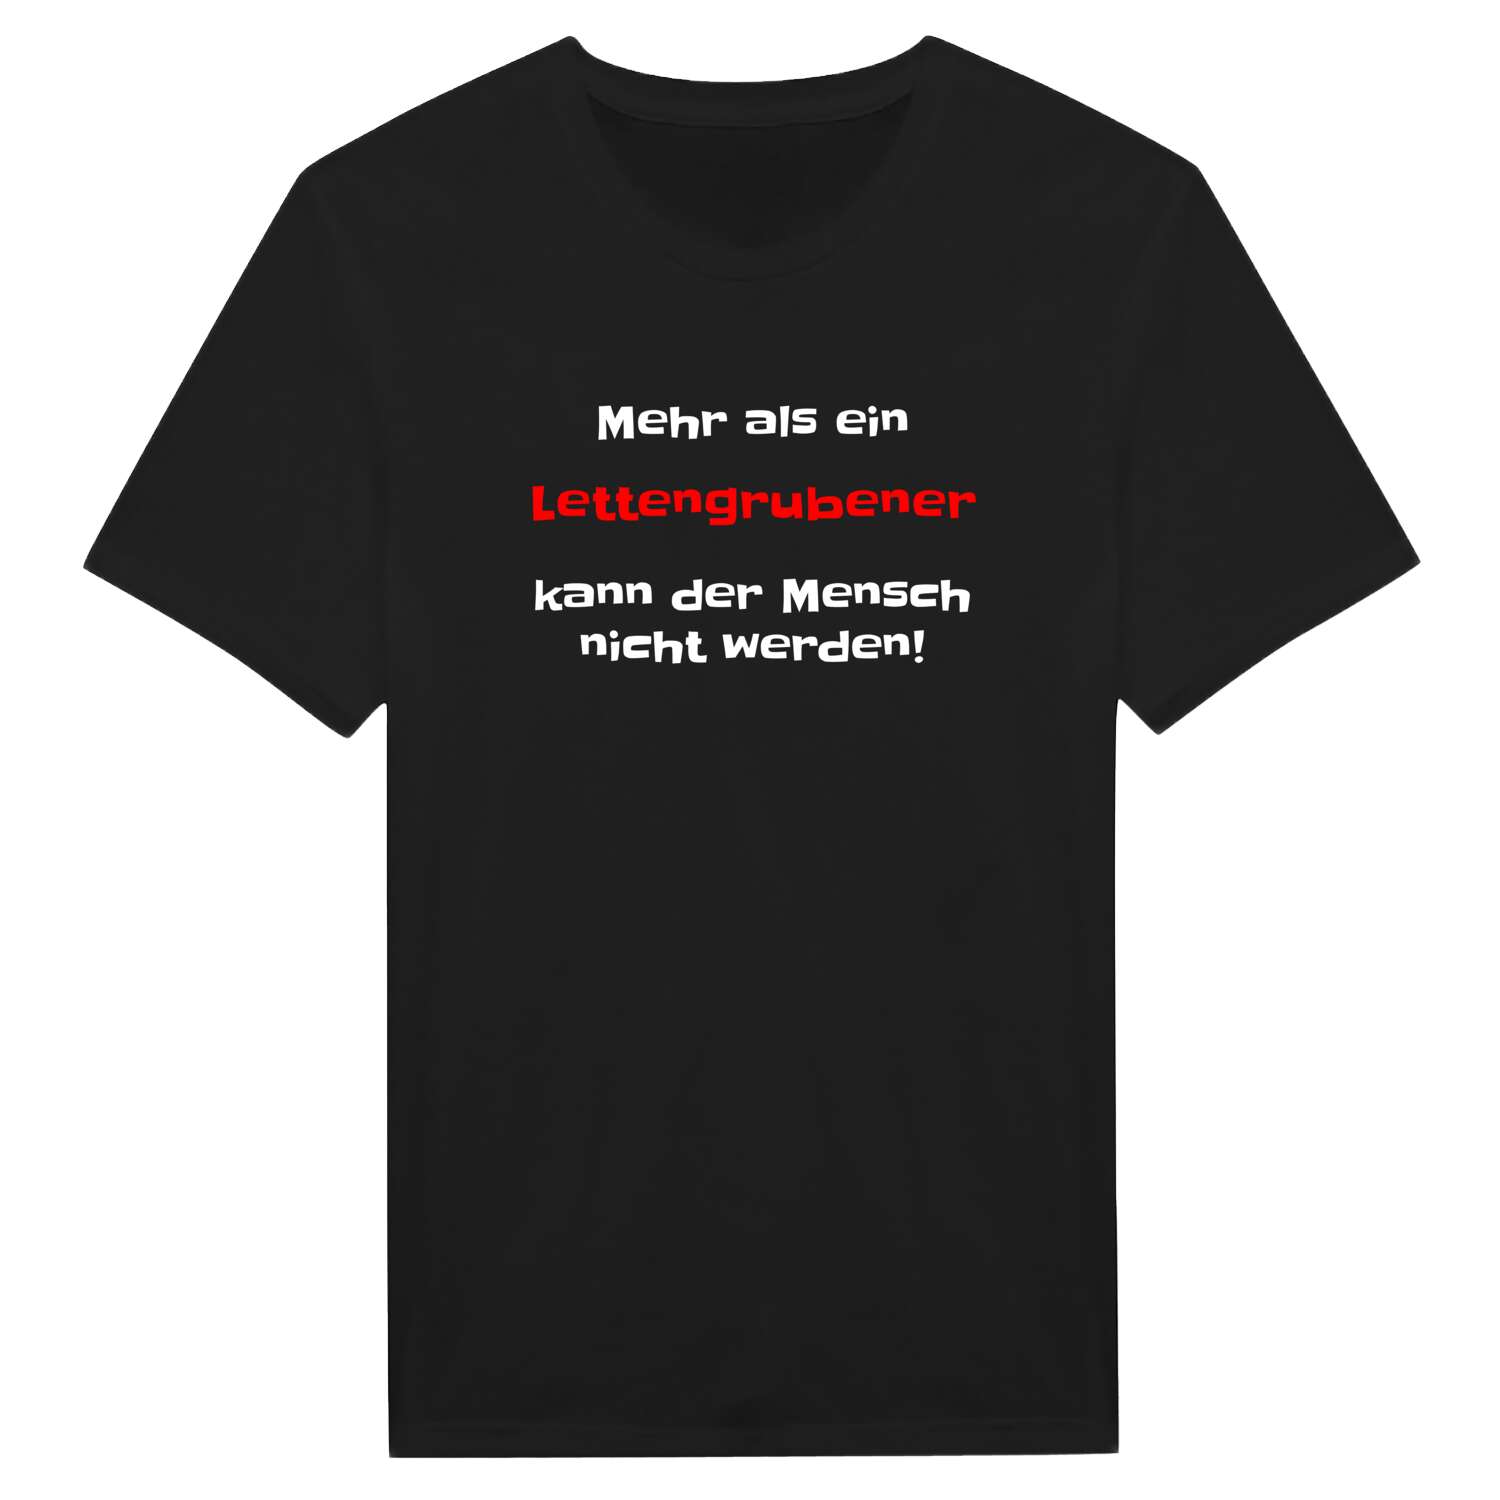 Lettengruben T-Shirt »Mehr als ein«